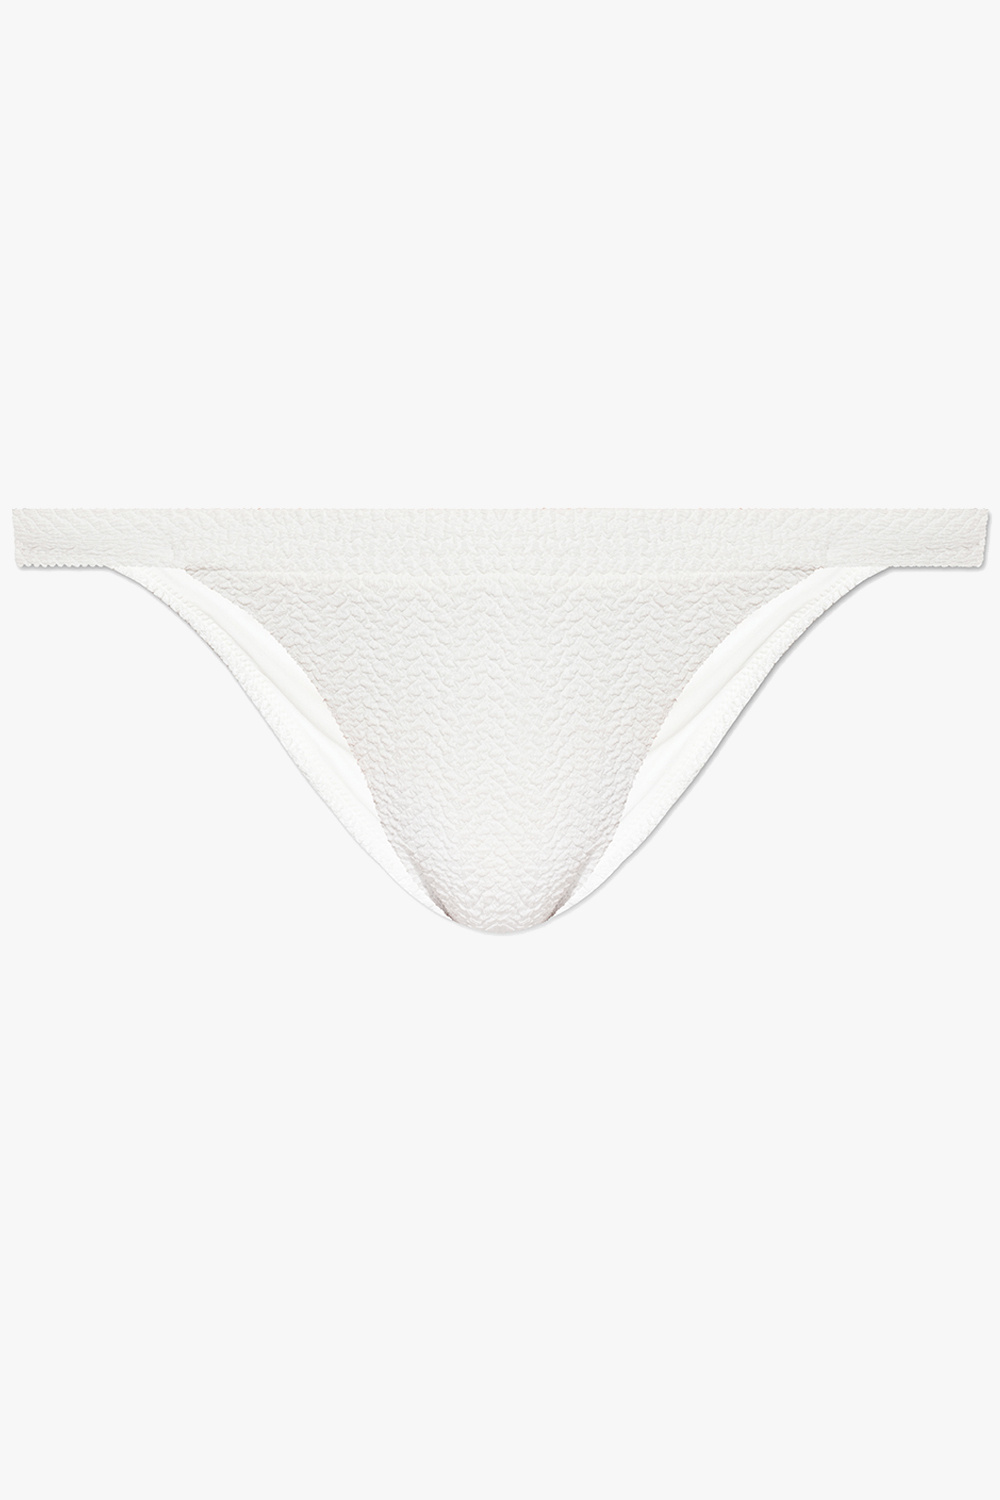 Nanushka ‘Mavis’ swimsuit bottom